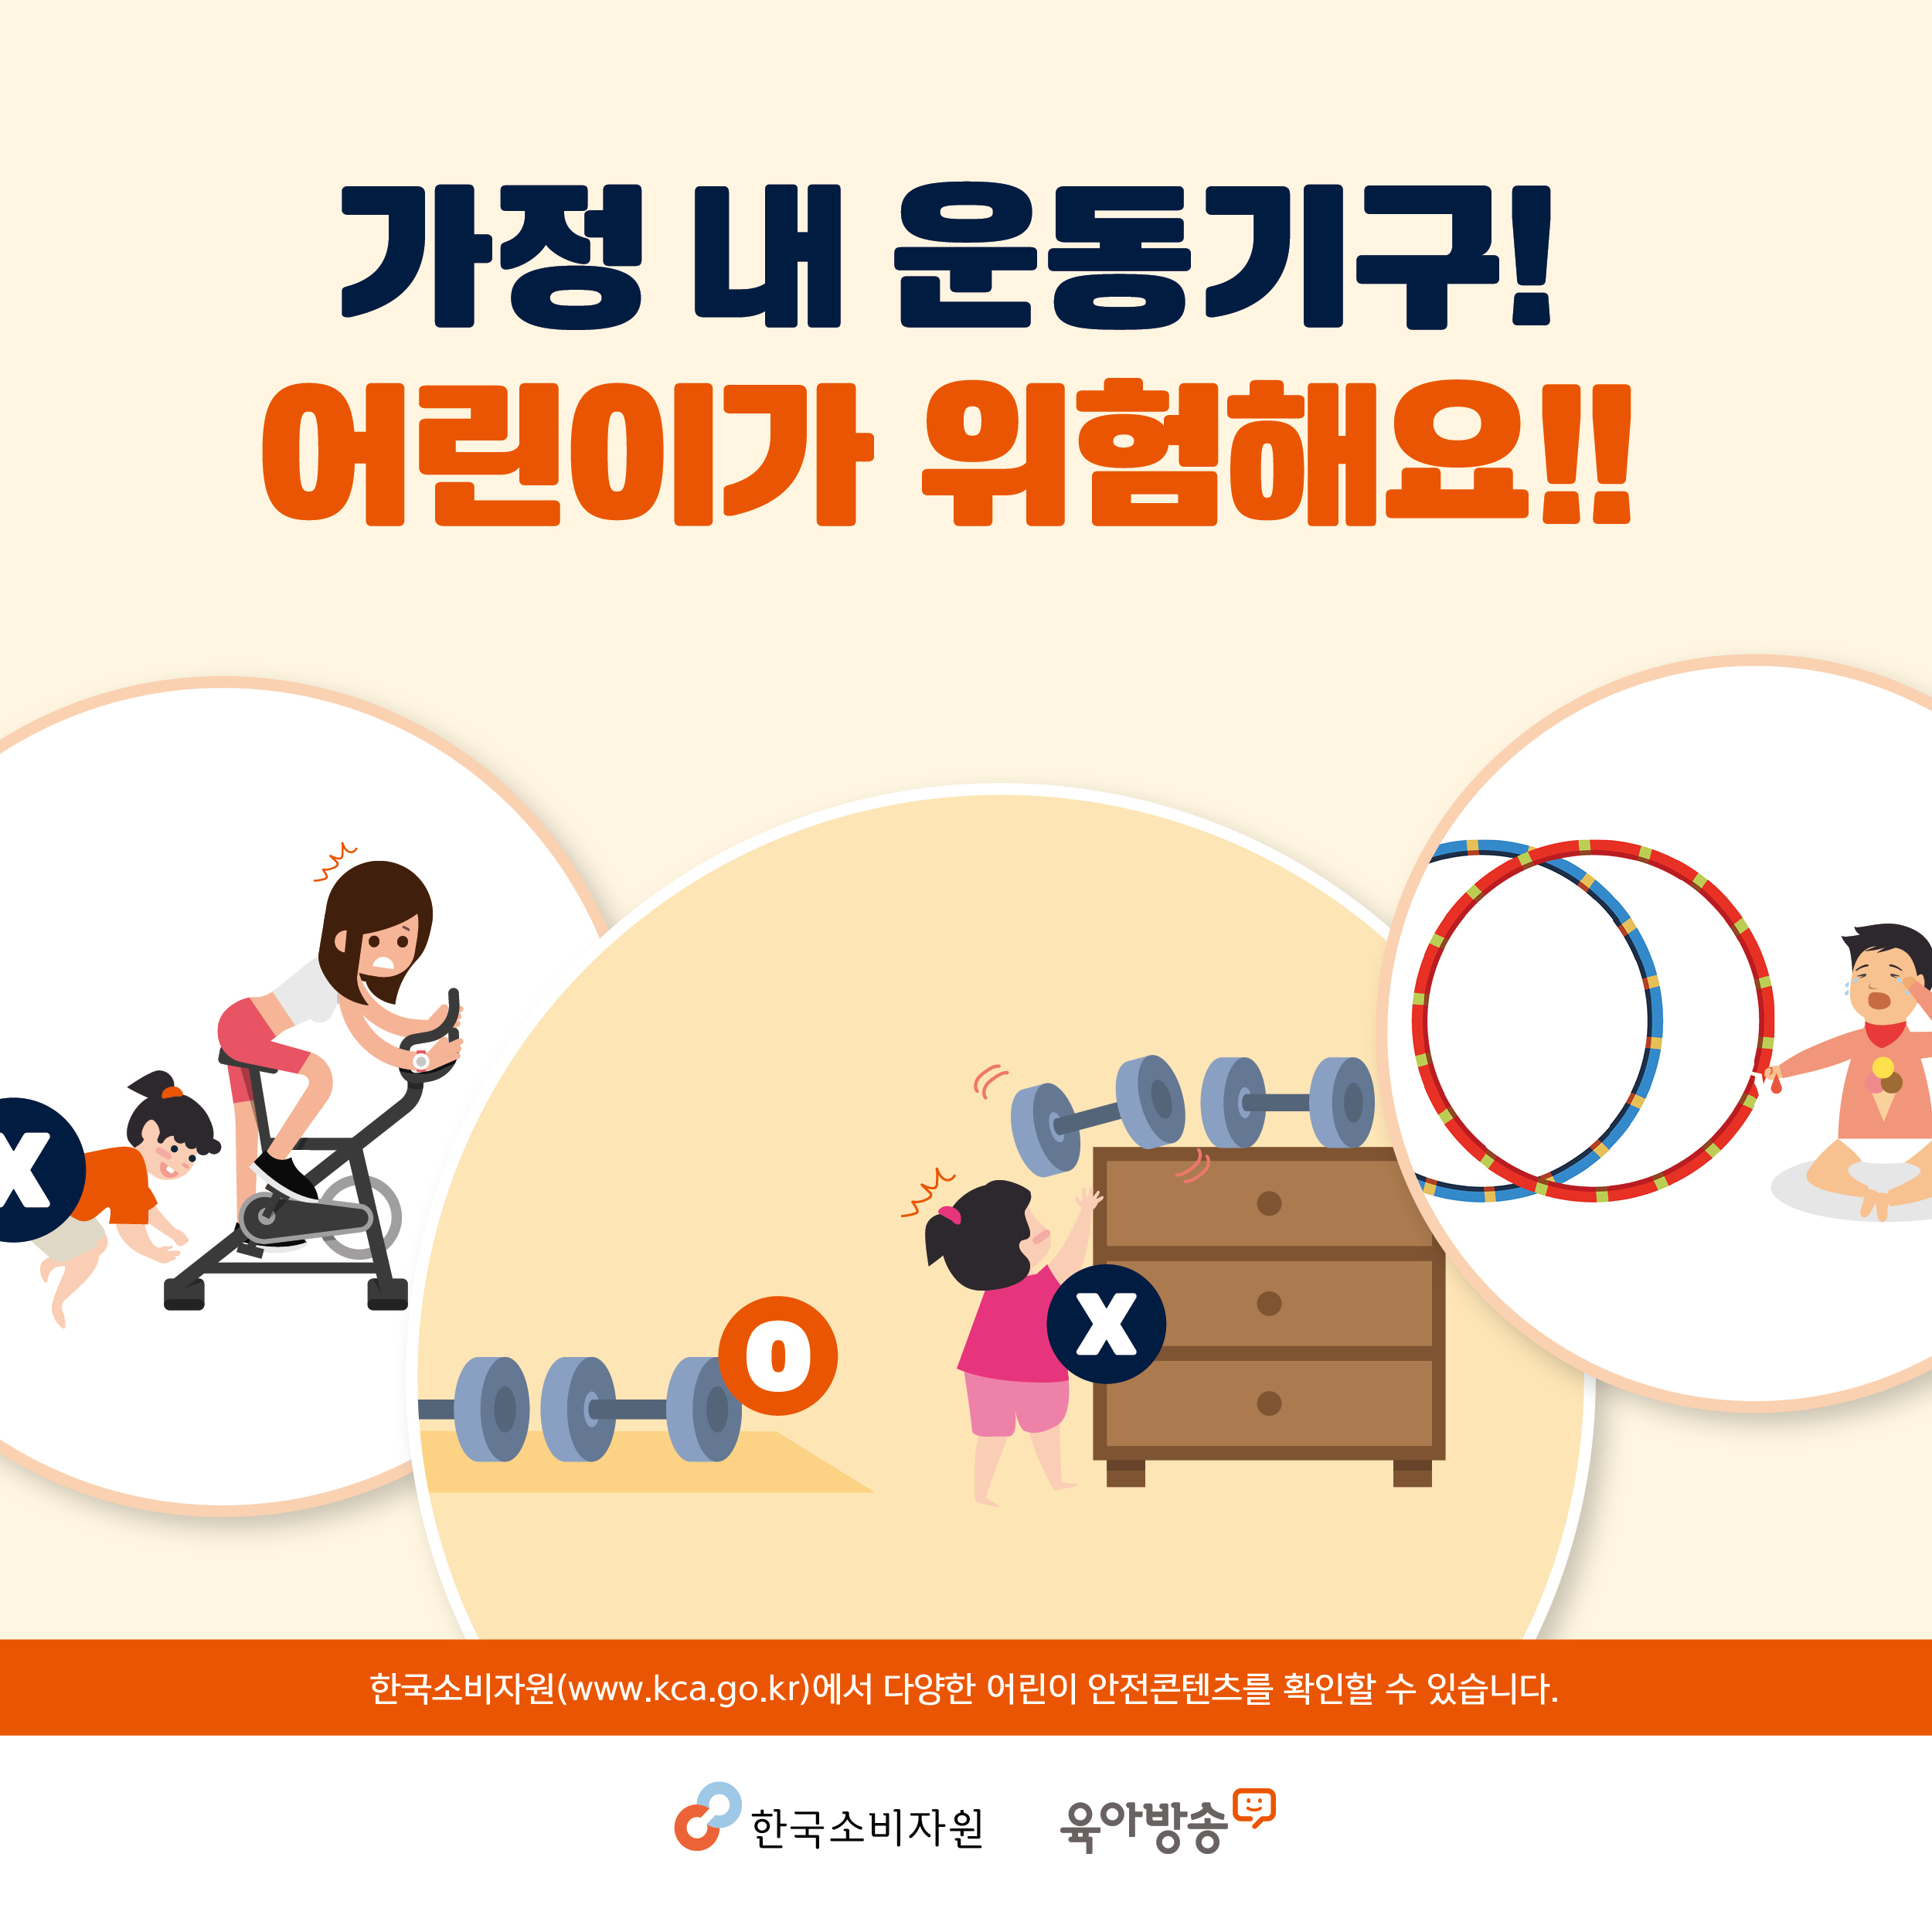 가정 내 운동기구, 어린이가 위험해요! 한국소비자원에서 다양한 어린이 안전콘텐츠를 확인할 수 있습니다. 한국소비자원 육아방송